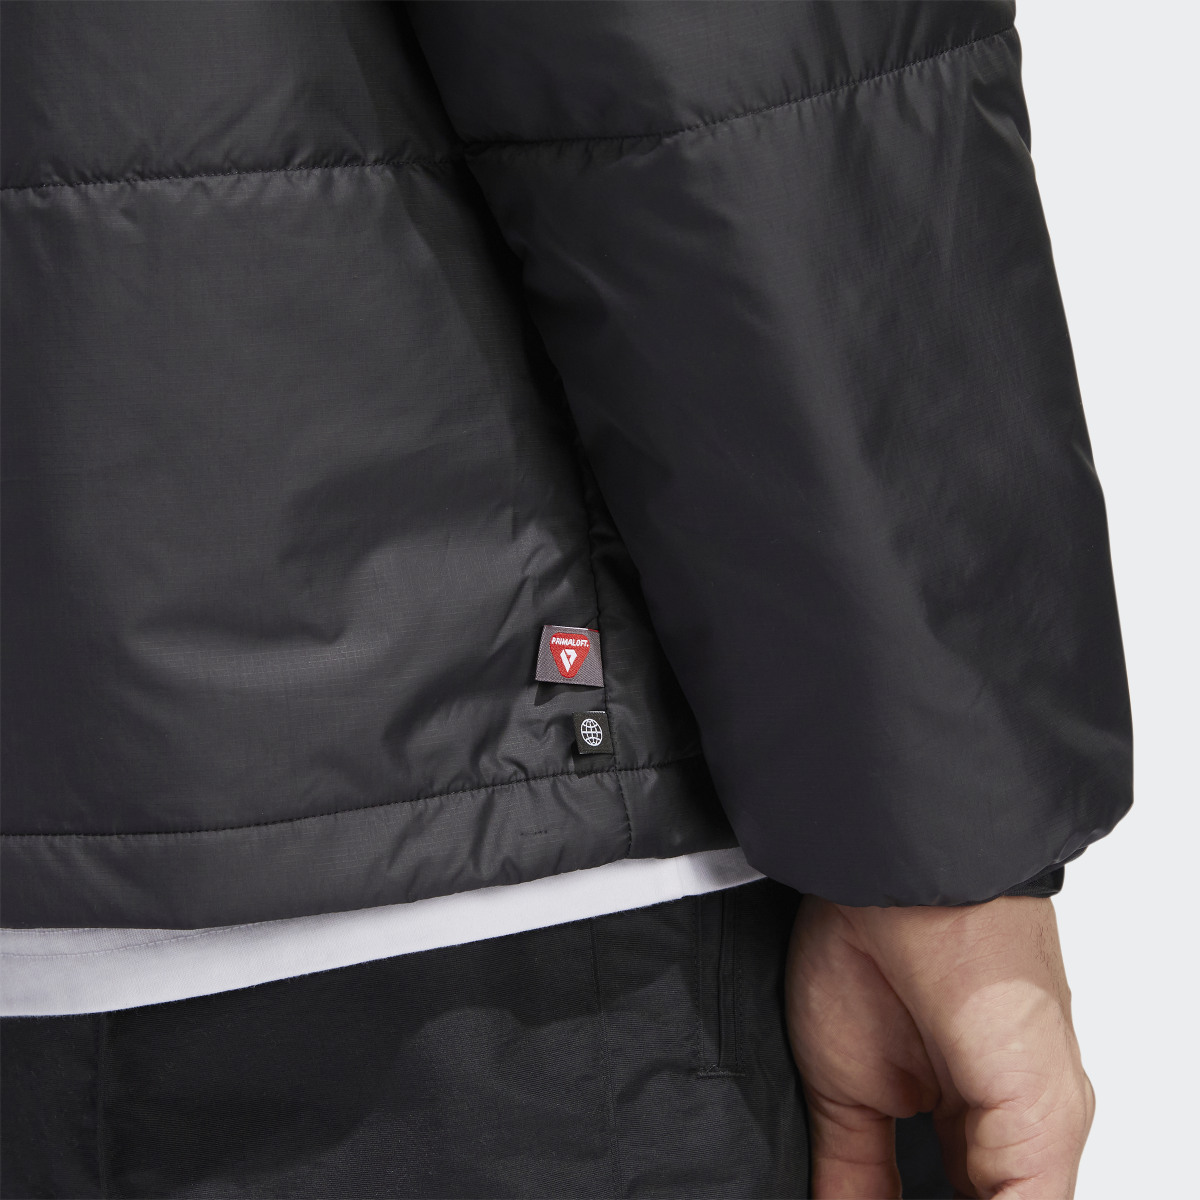 Adidas PrimaLoft Outer Station Jacket (Gender Neutral). 8